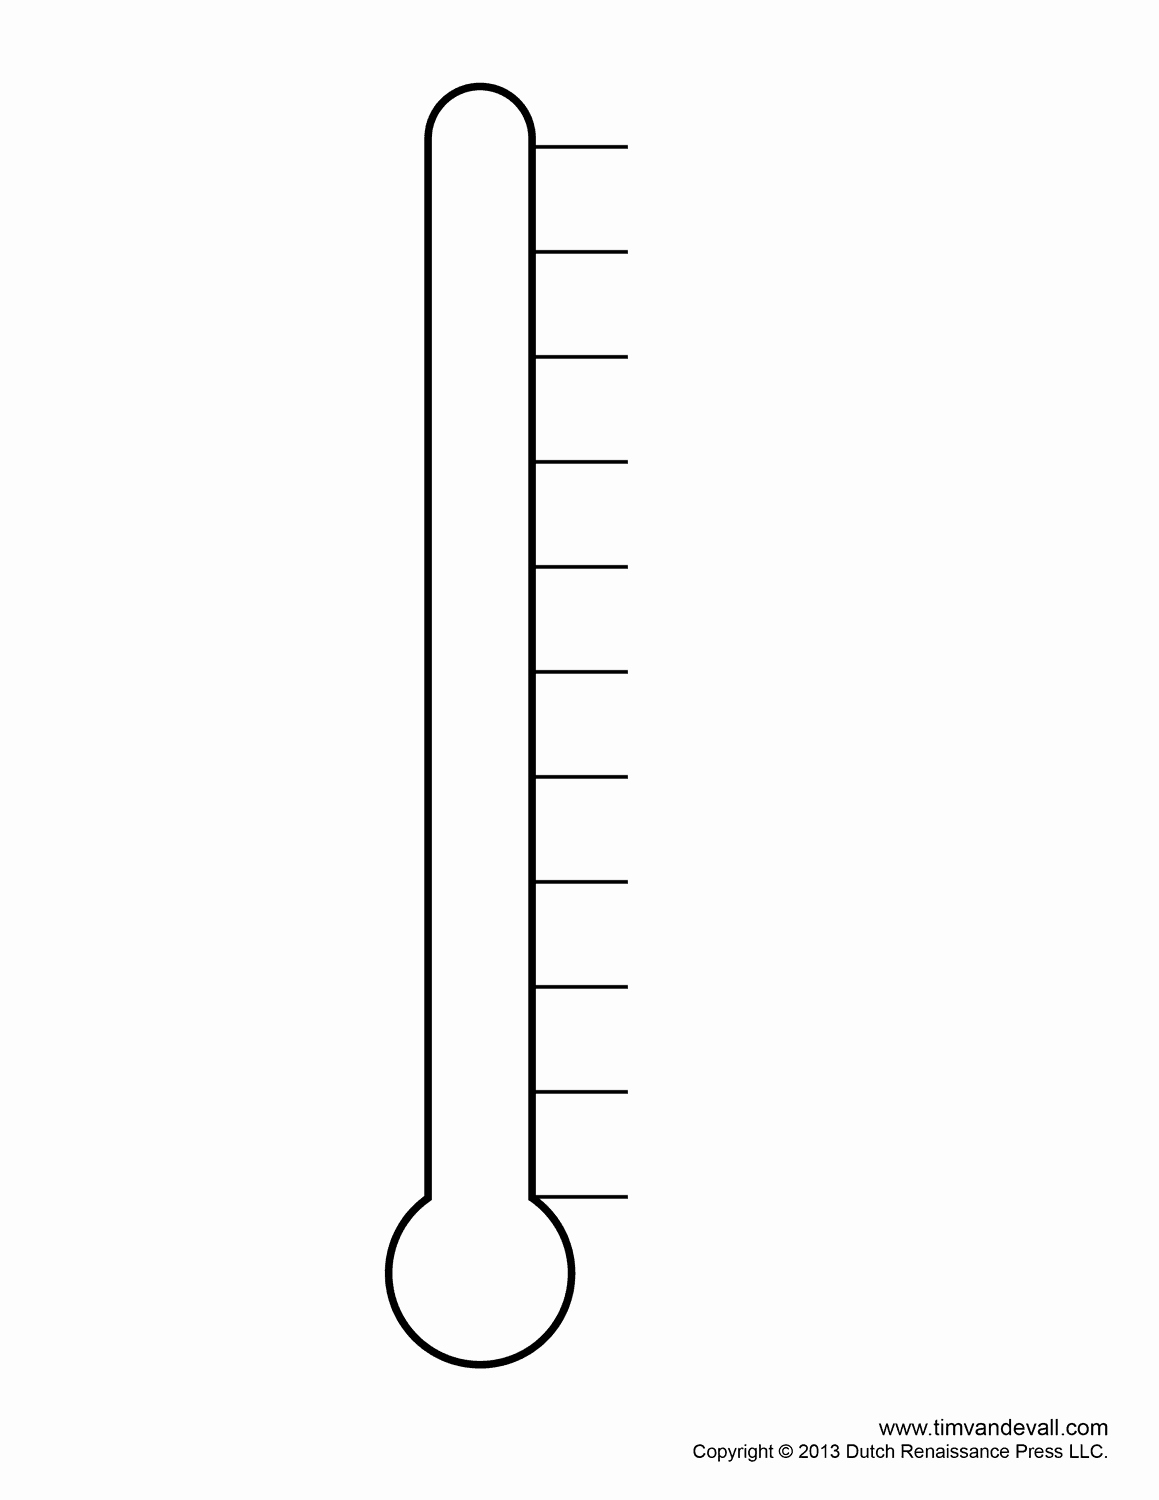 Fundraising Goal Chart Template Beautiful Fundraising thermometer Templates for Fundraising events